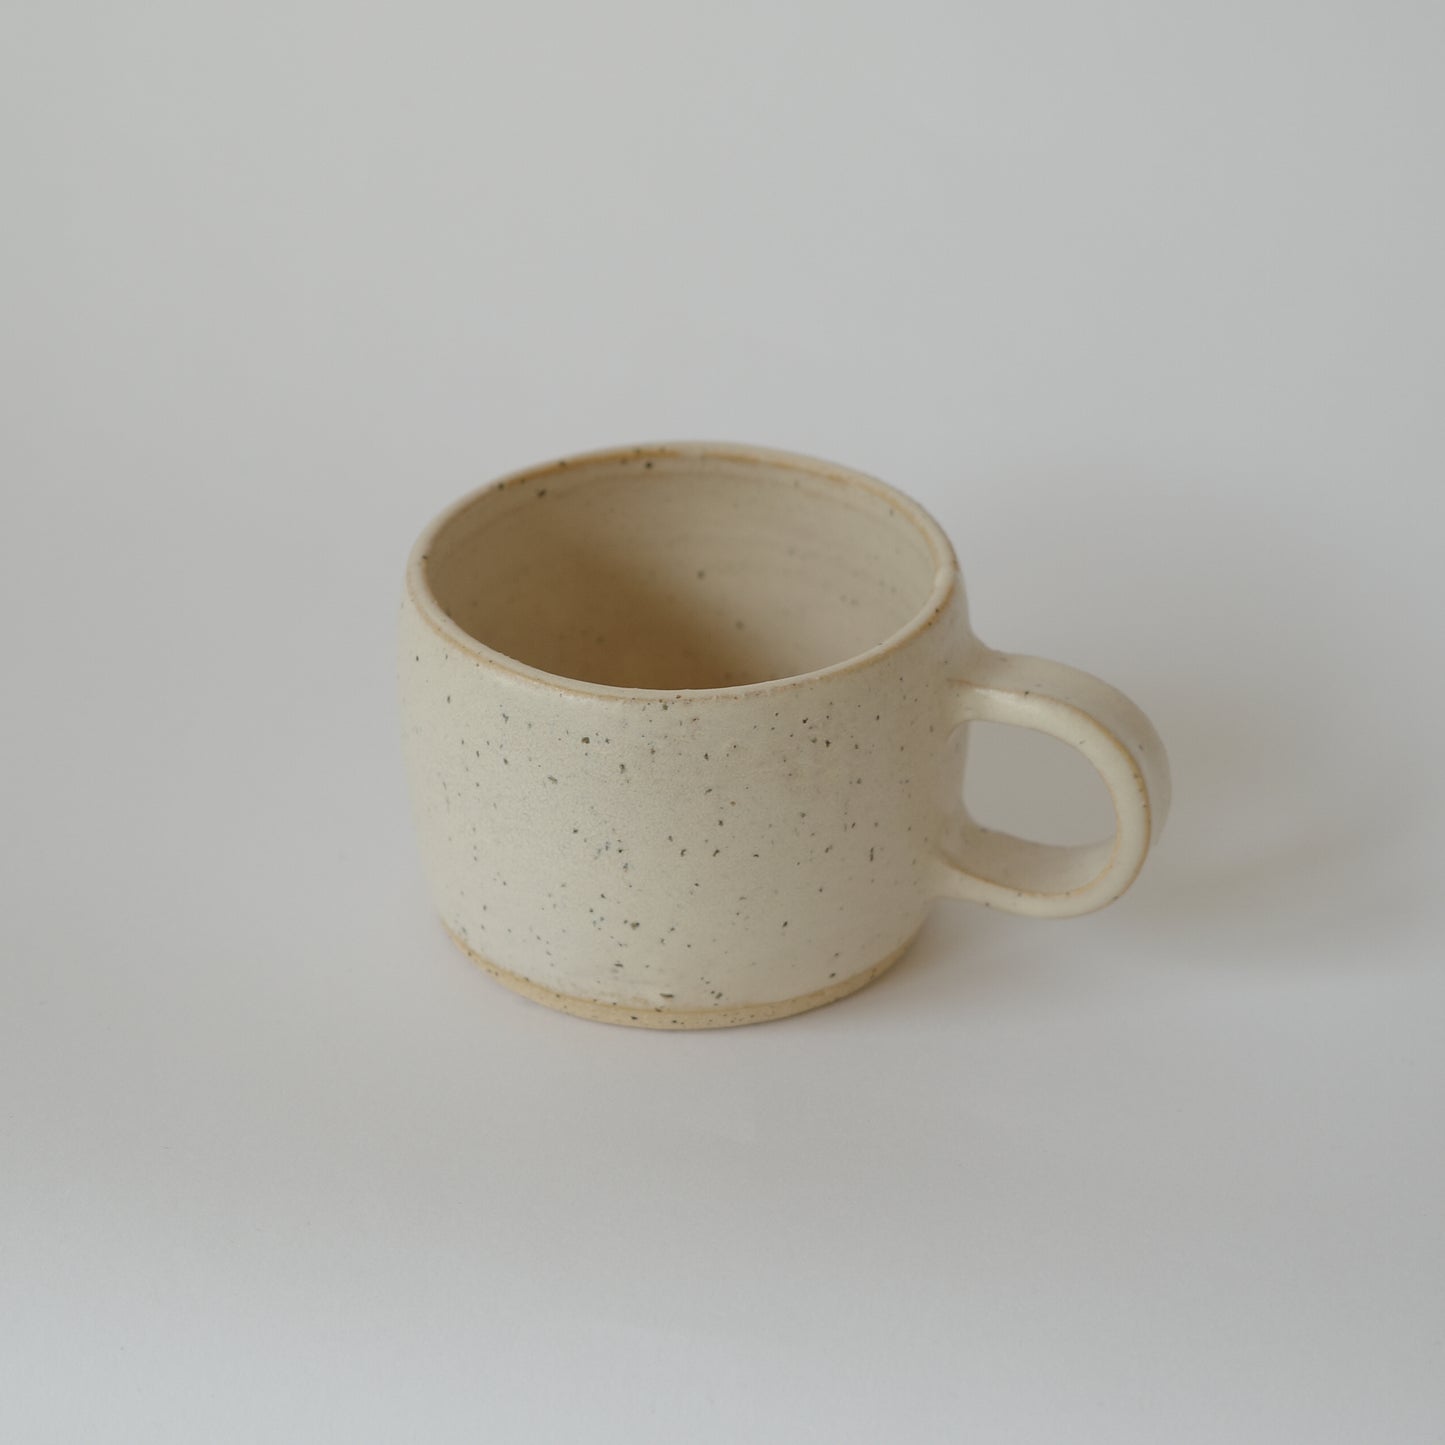 Grain mug